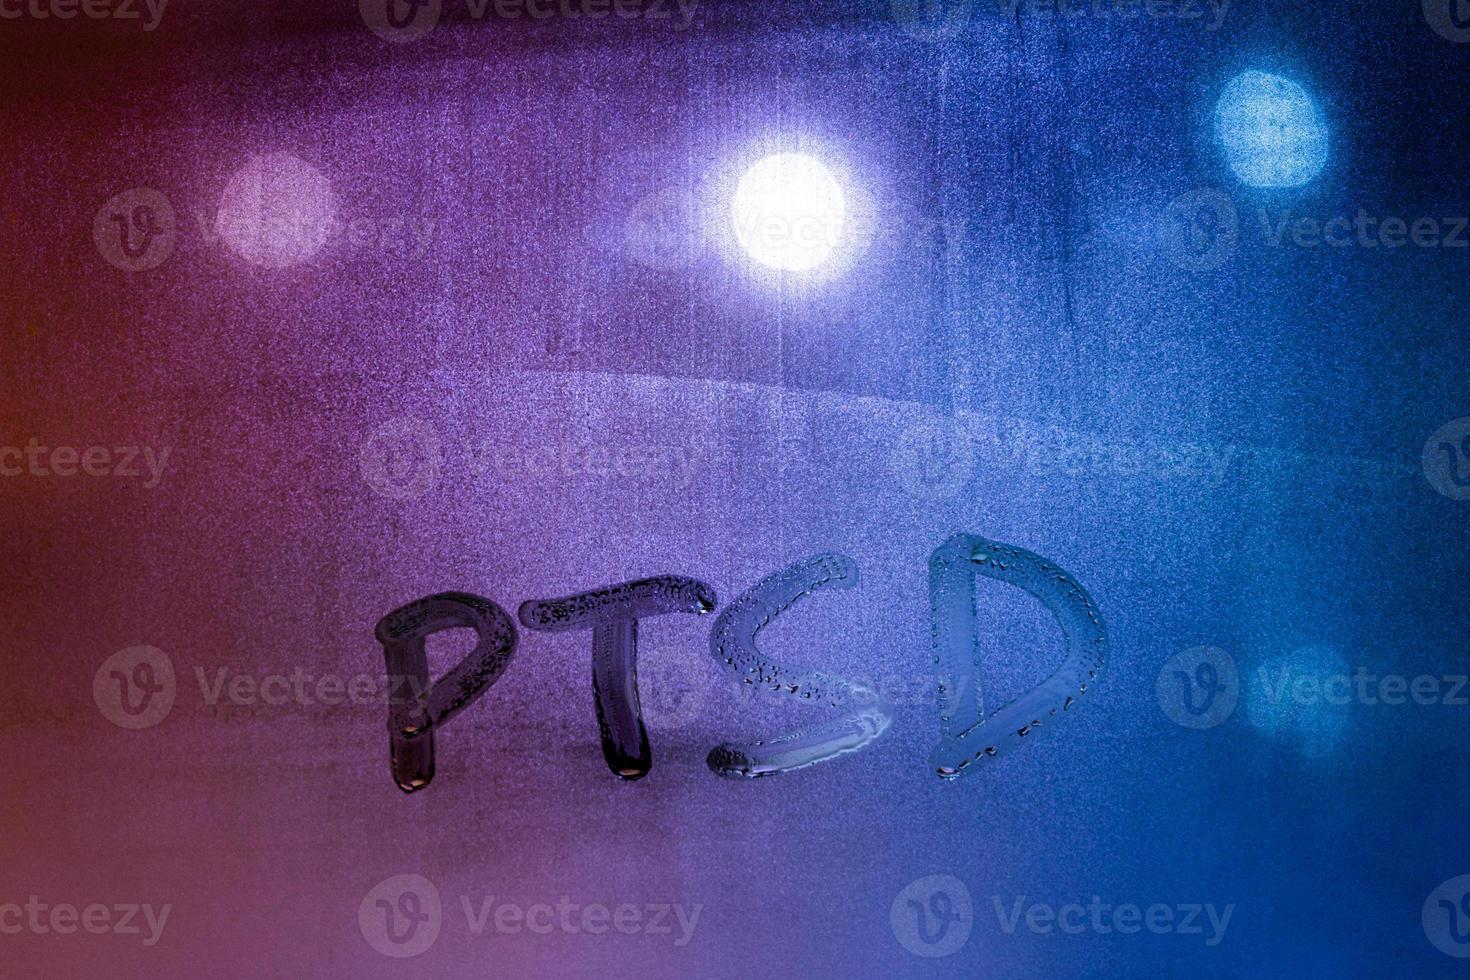 abkürzung ptsd - posttraumatische belastungsstörung - handschriftlich auf nachtfeuchtem fensterglas foto